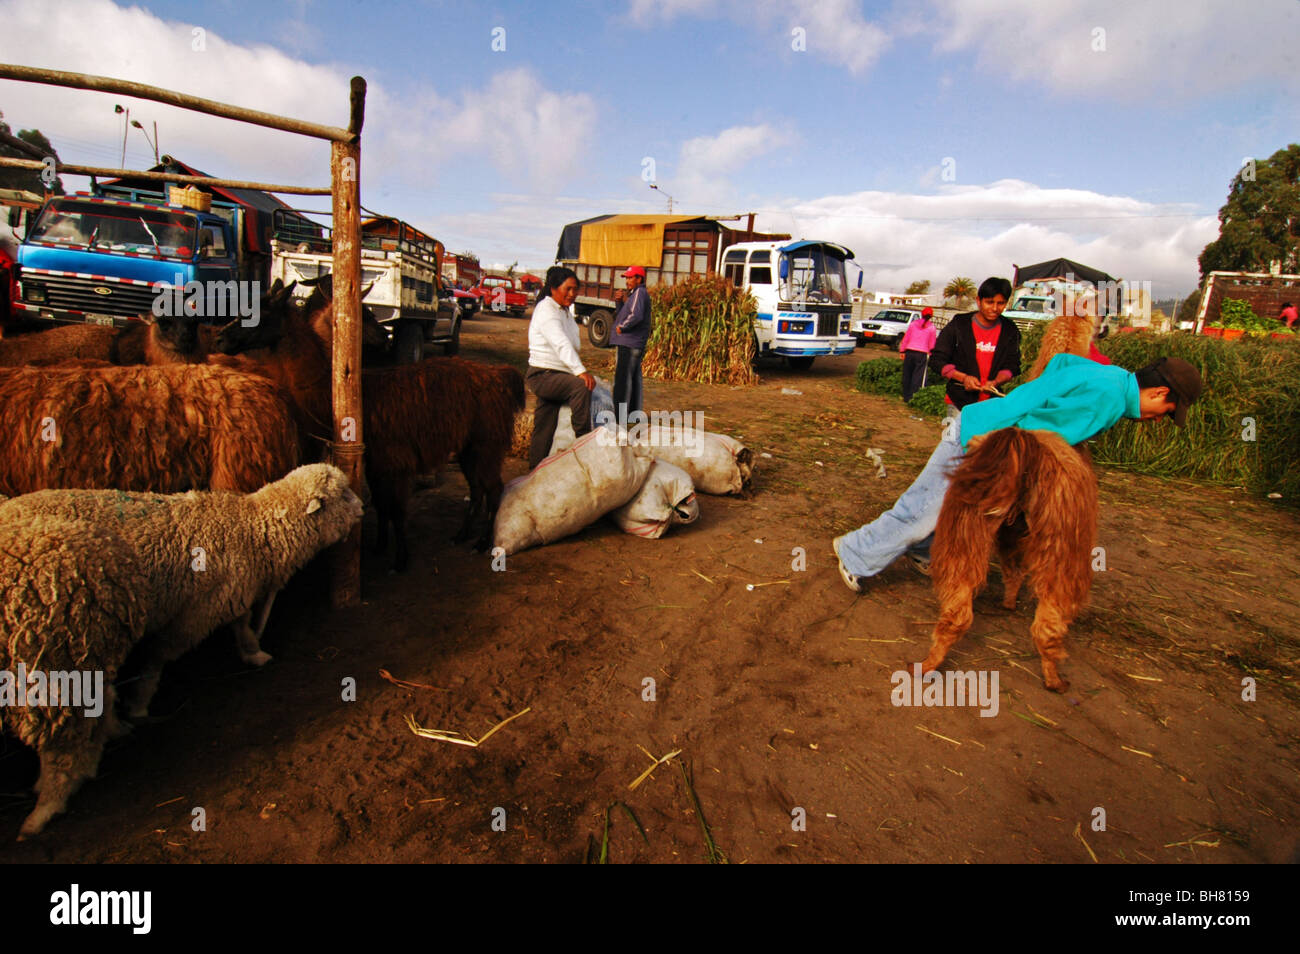 L'Équateur, de Saquisili, jeune homme essaie de monter un lama, au milieu des autres lama et de mouton avec les camions autour de against sky Banque D'Images